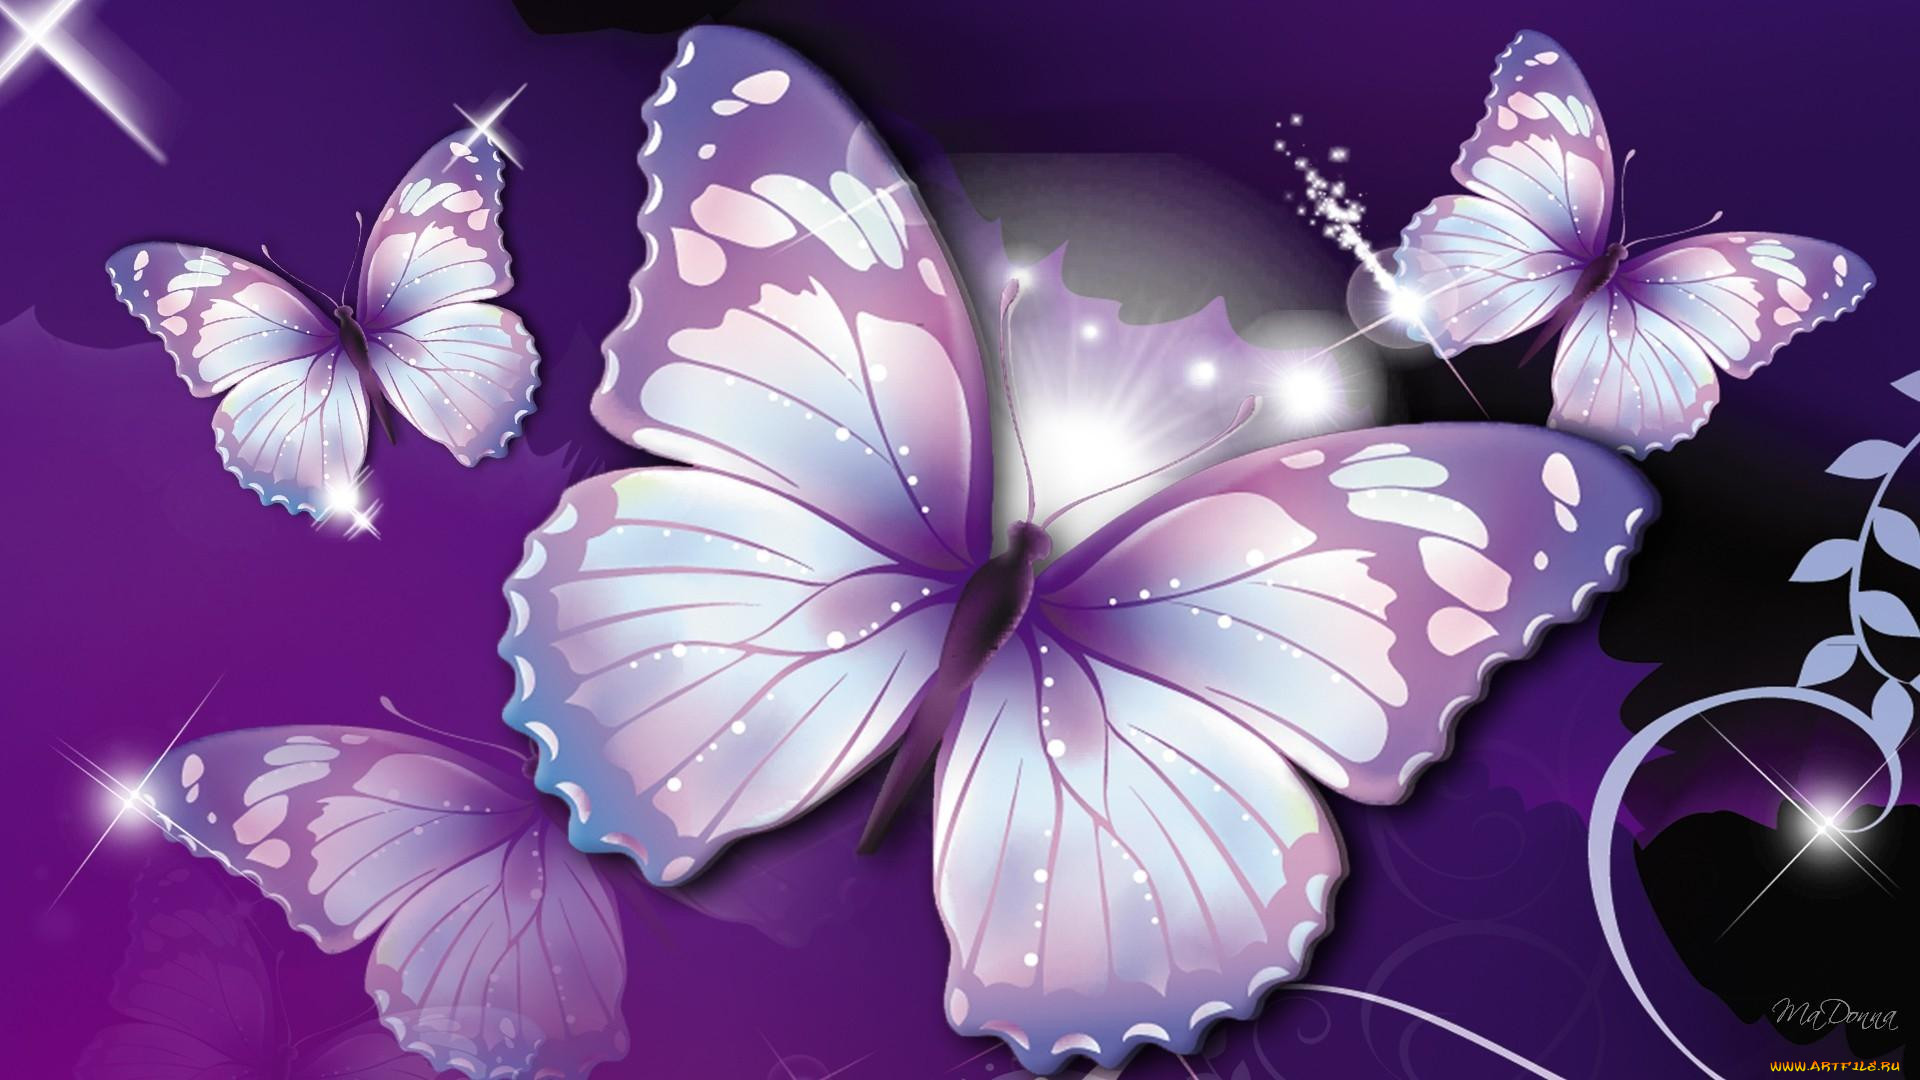 Обои на стол бабочки. Бабочки картинки красивые. Фон бабочки. Красивый фон с бабочками. Фотообои бабочки.